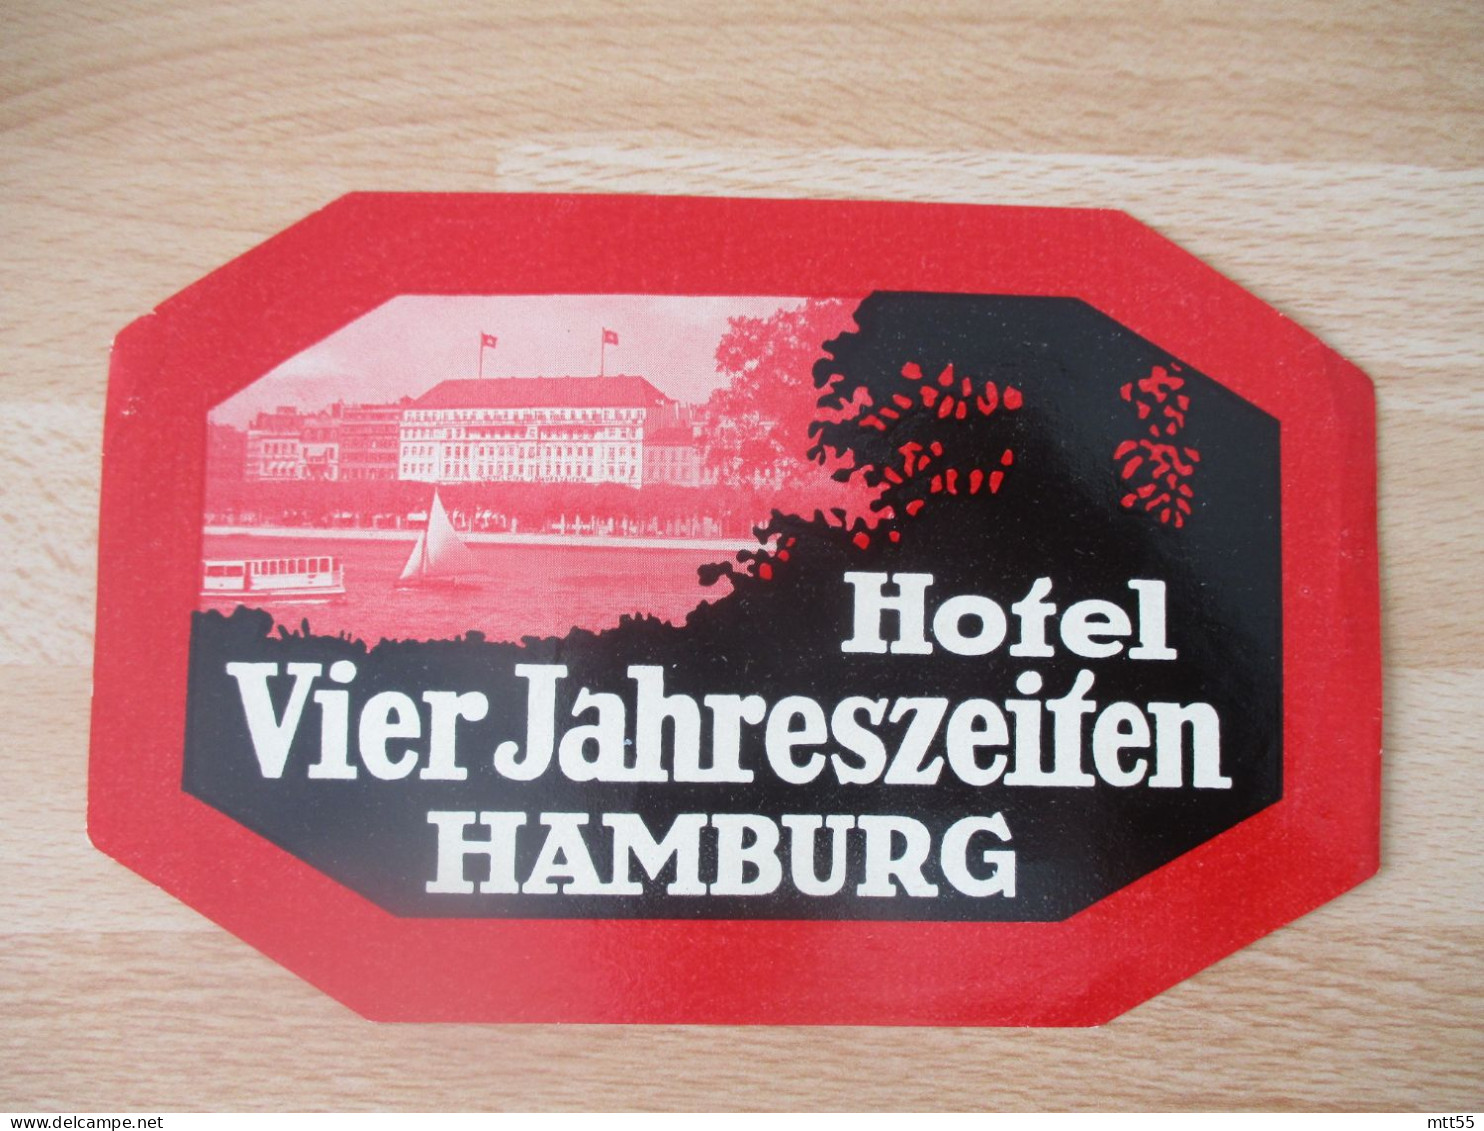 HAMBURG HAMBOURG HOTEL VIER JAHNRESZEIIEN  ETIQUETTE HOTEL - Hotelaufkleber